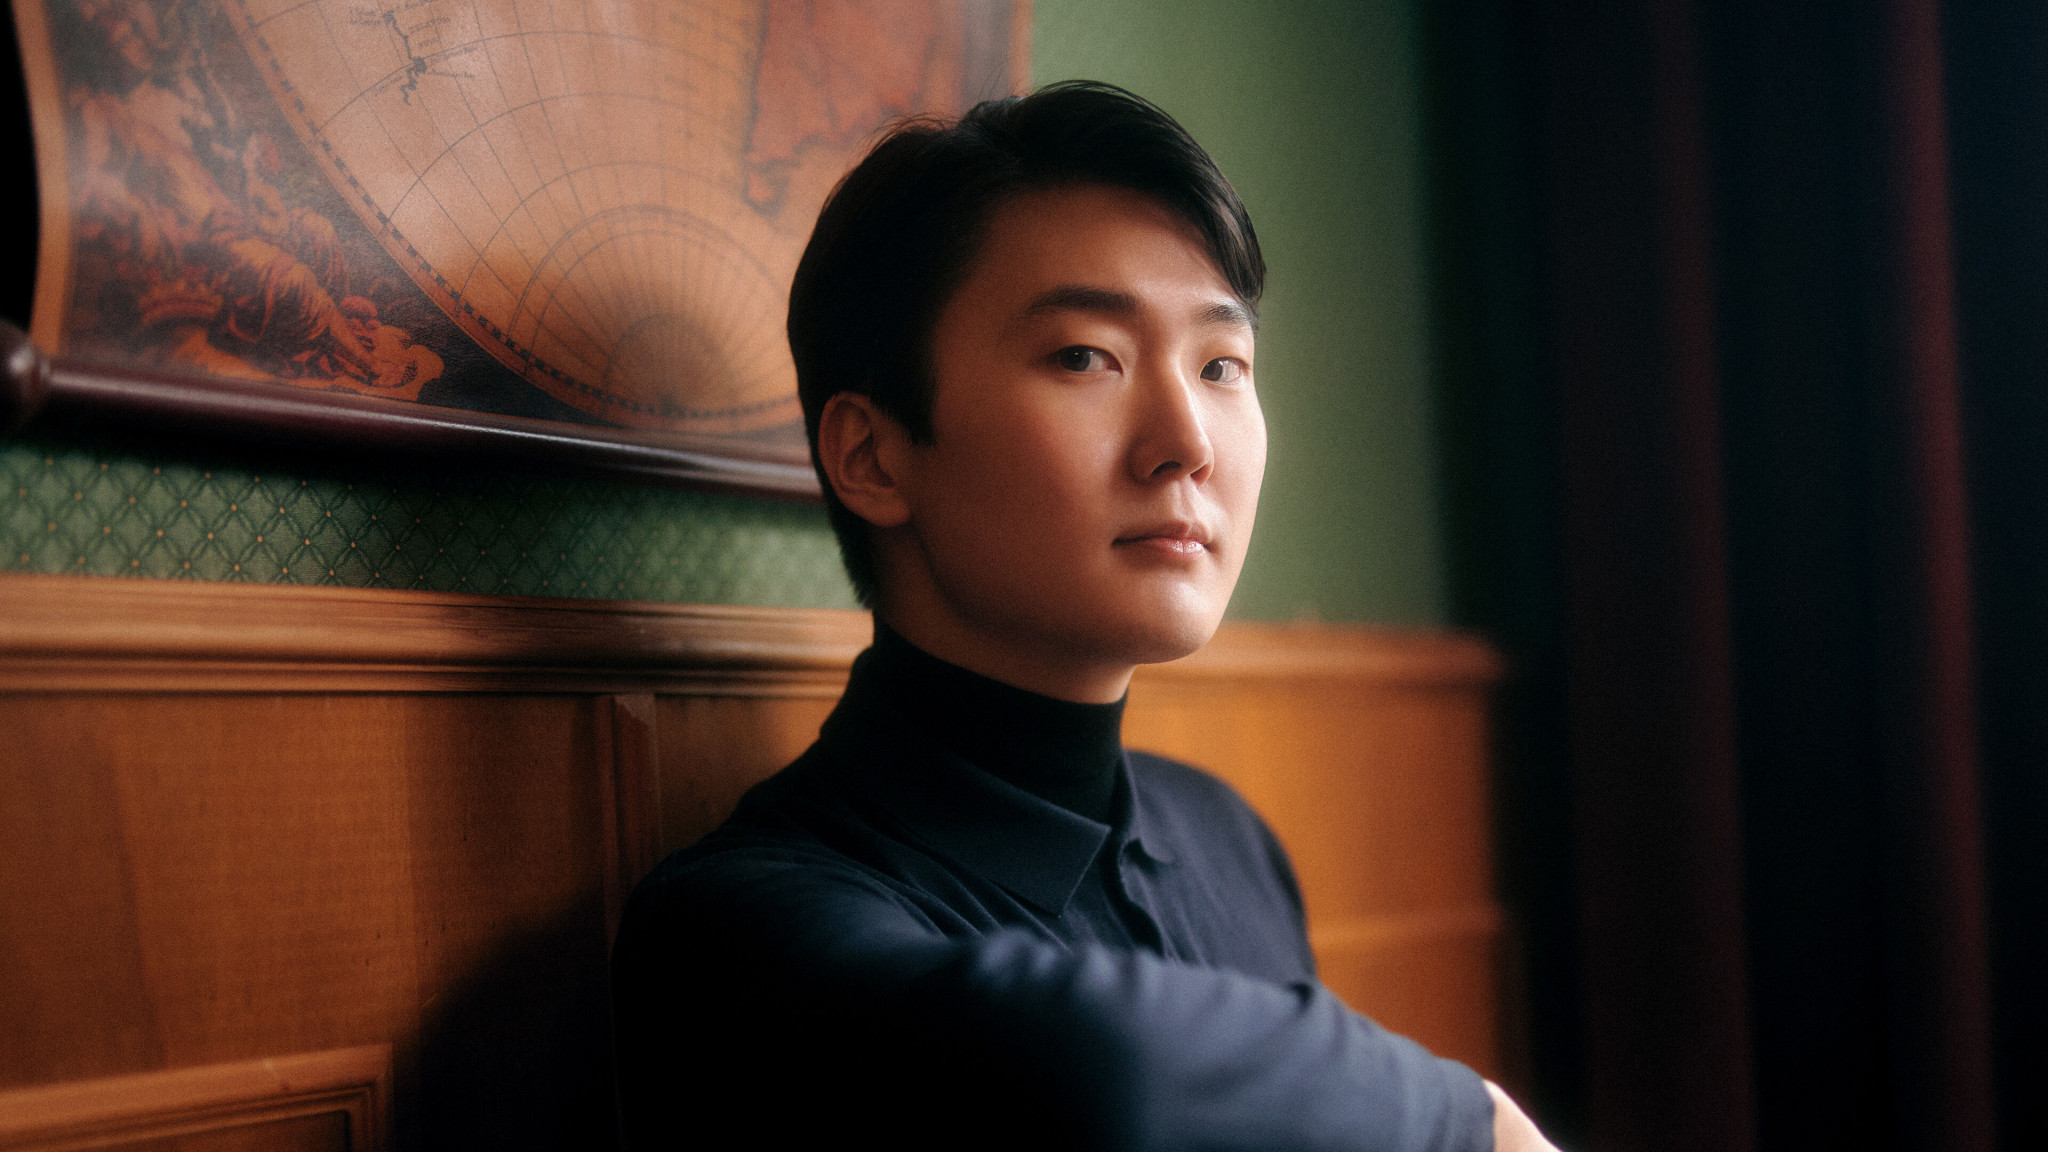 Seong-Jin Cho returns to Chopin